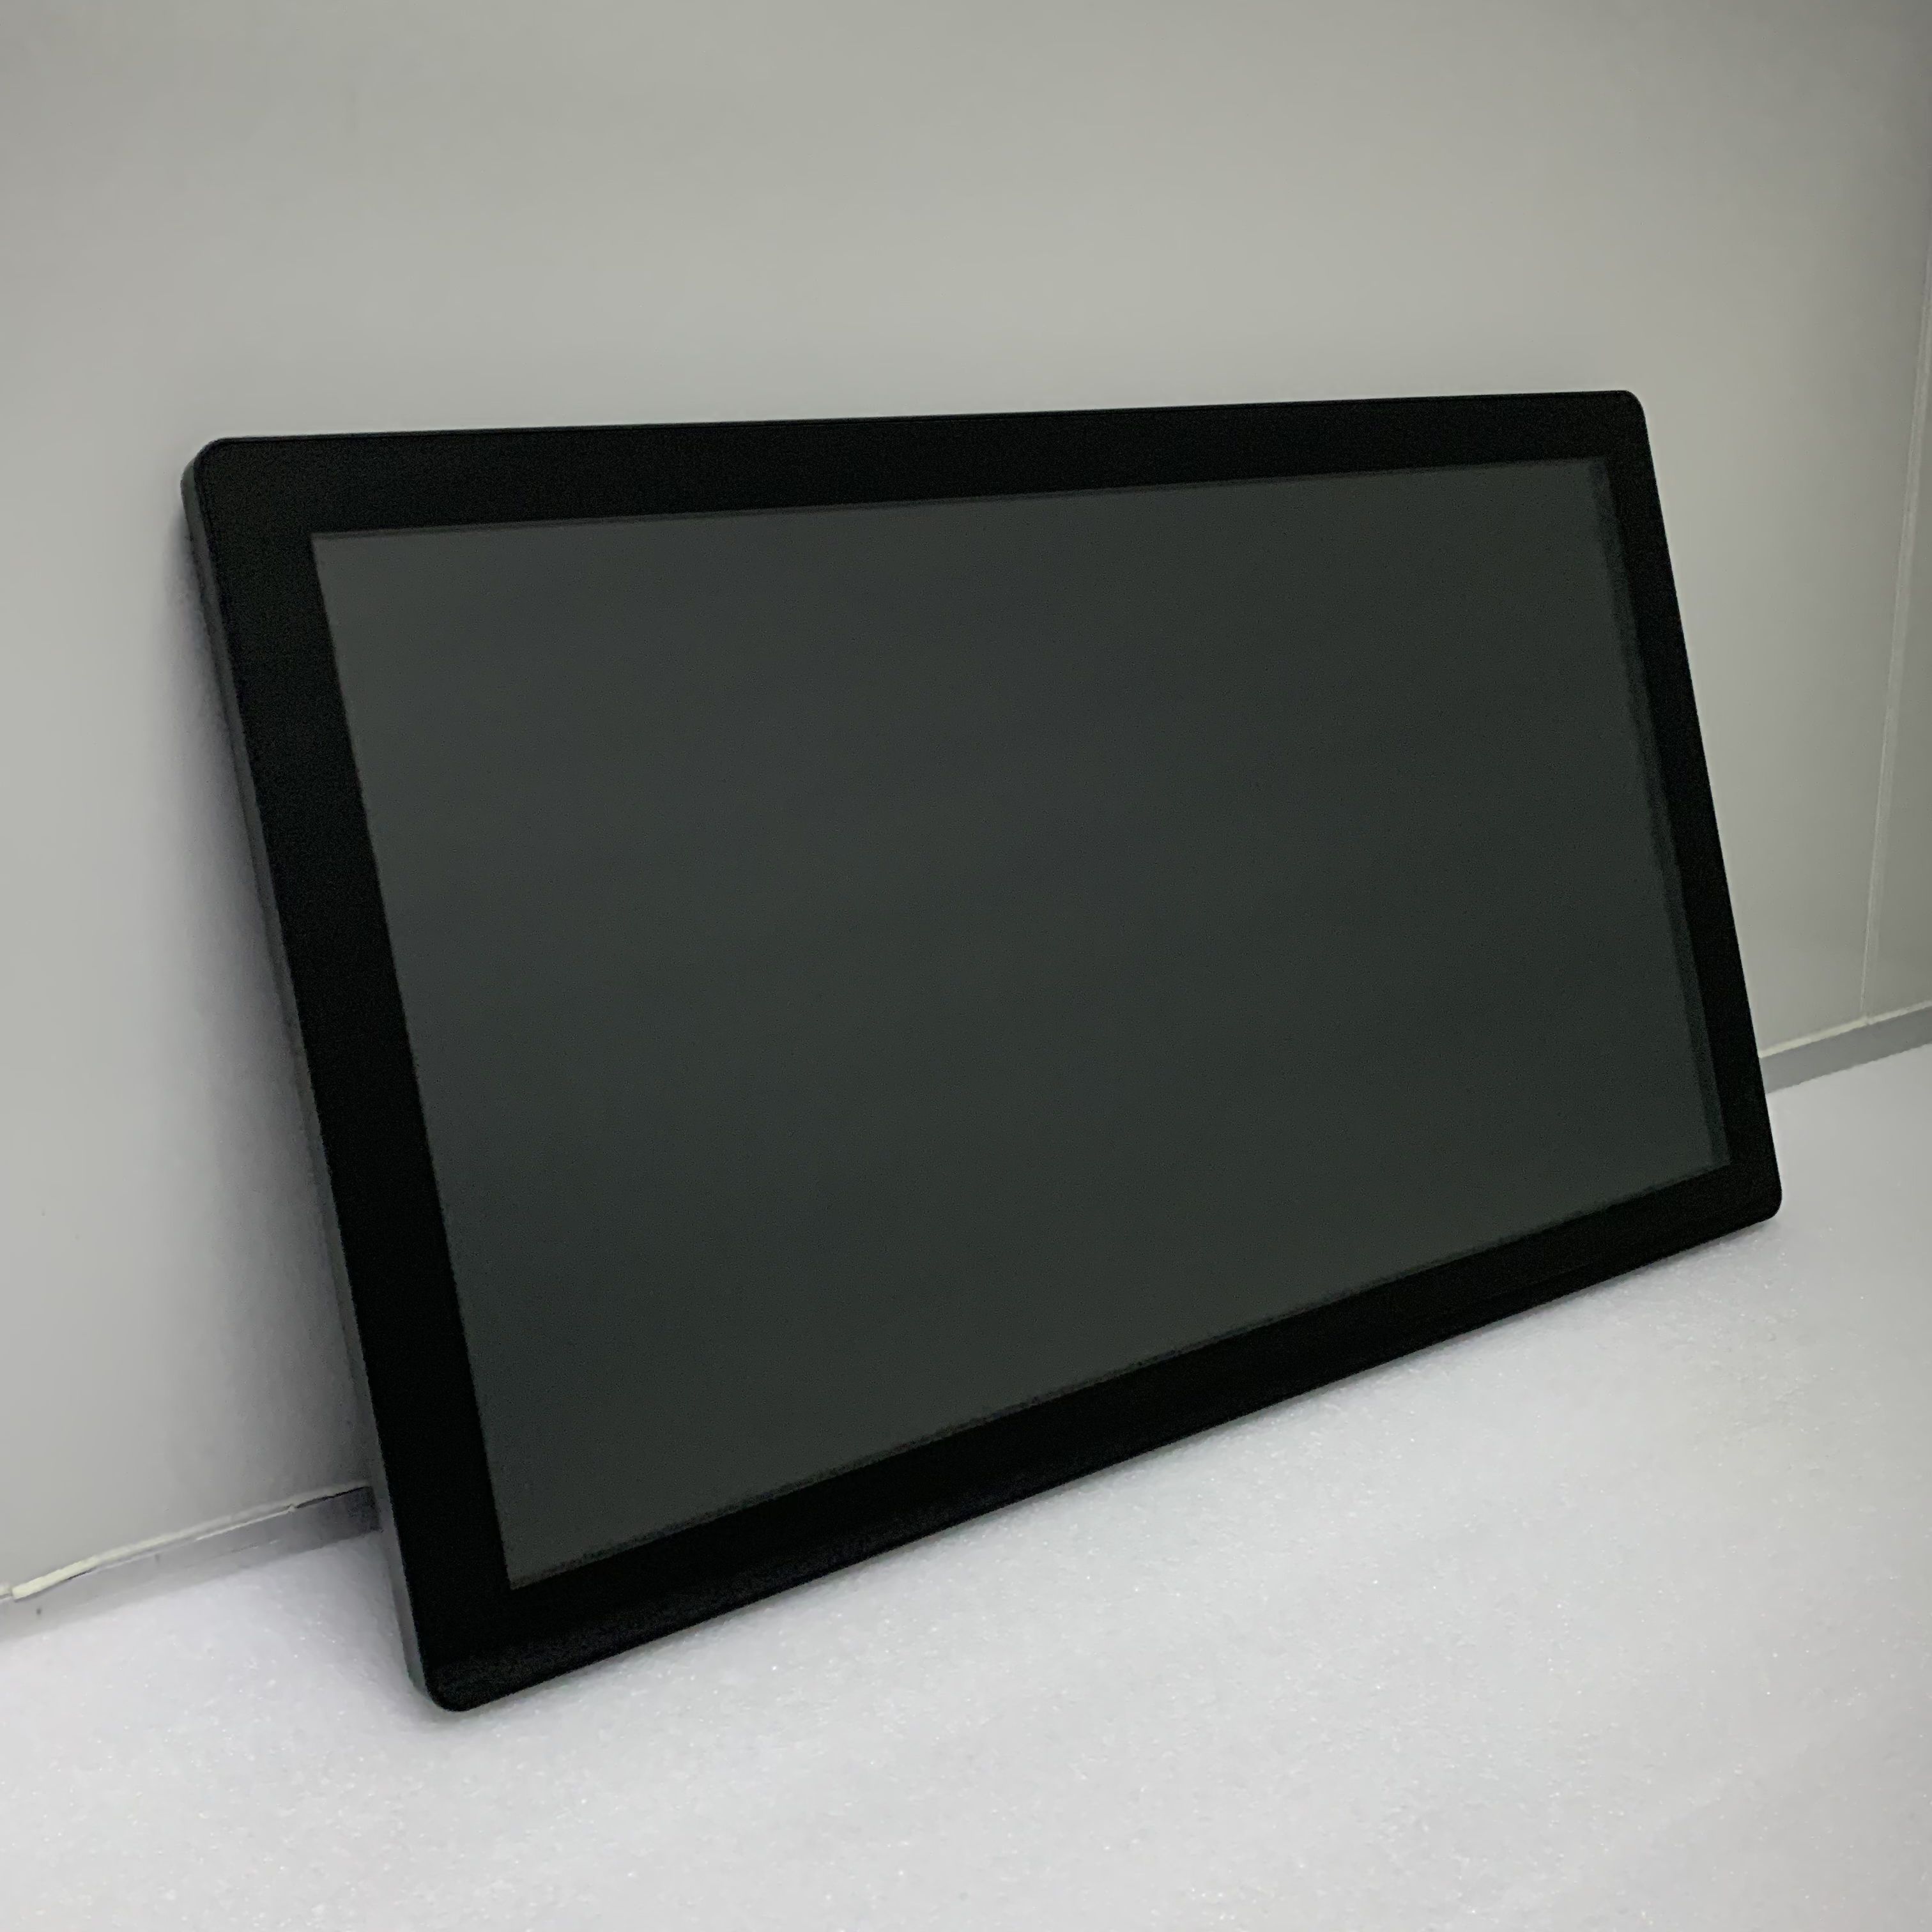 27 英寸高亮度 1500 尼特户外显示液晶屏幕监视器自助服务终端智能电视